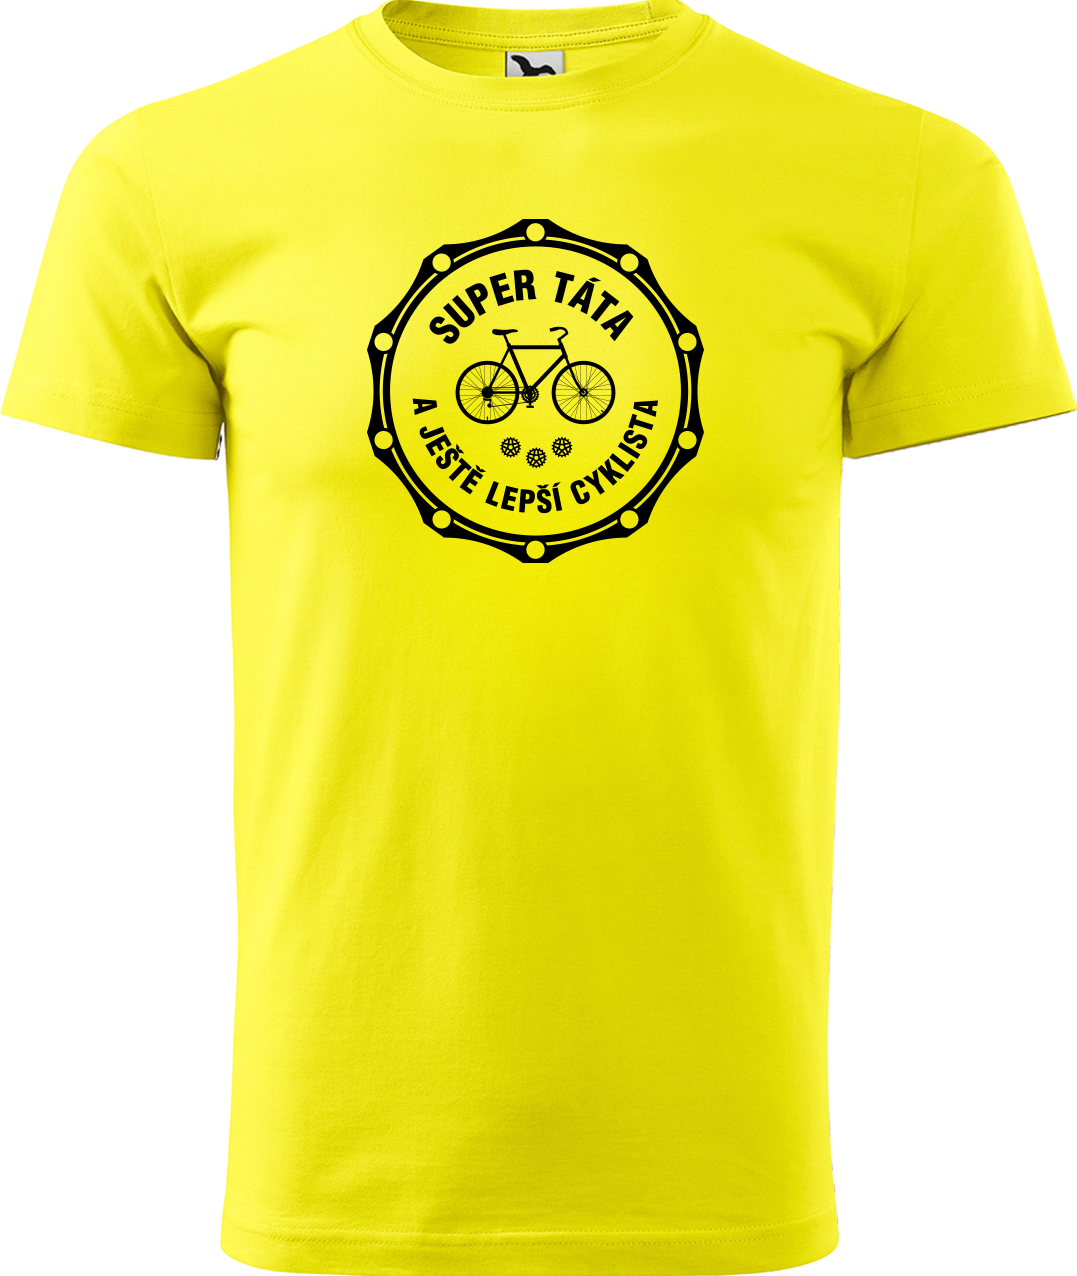 Pánské tričko pro cyklistu - Super táta a ještě lepší cyklista Velikost: XL, Barva: Žlutá (04)